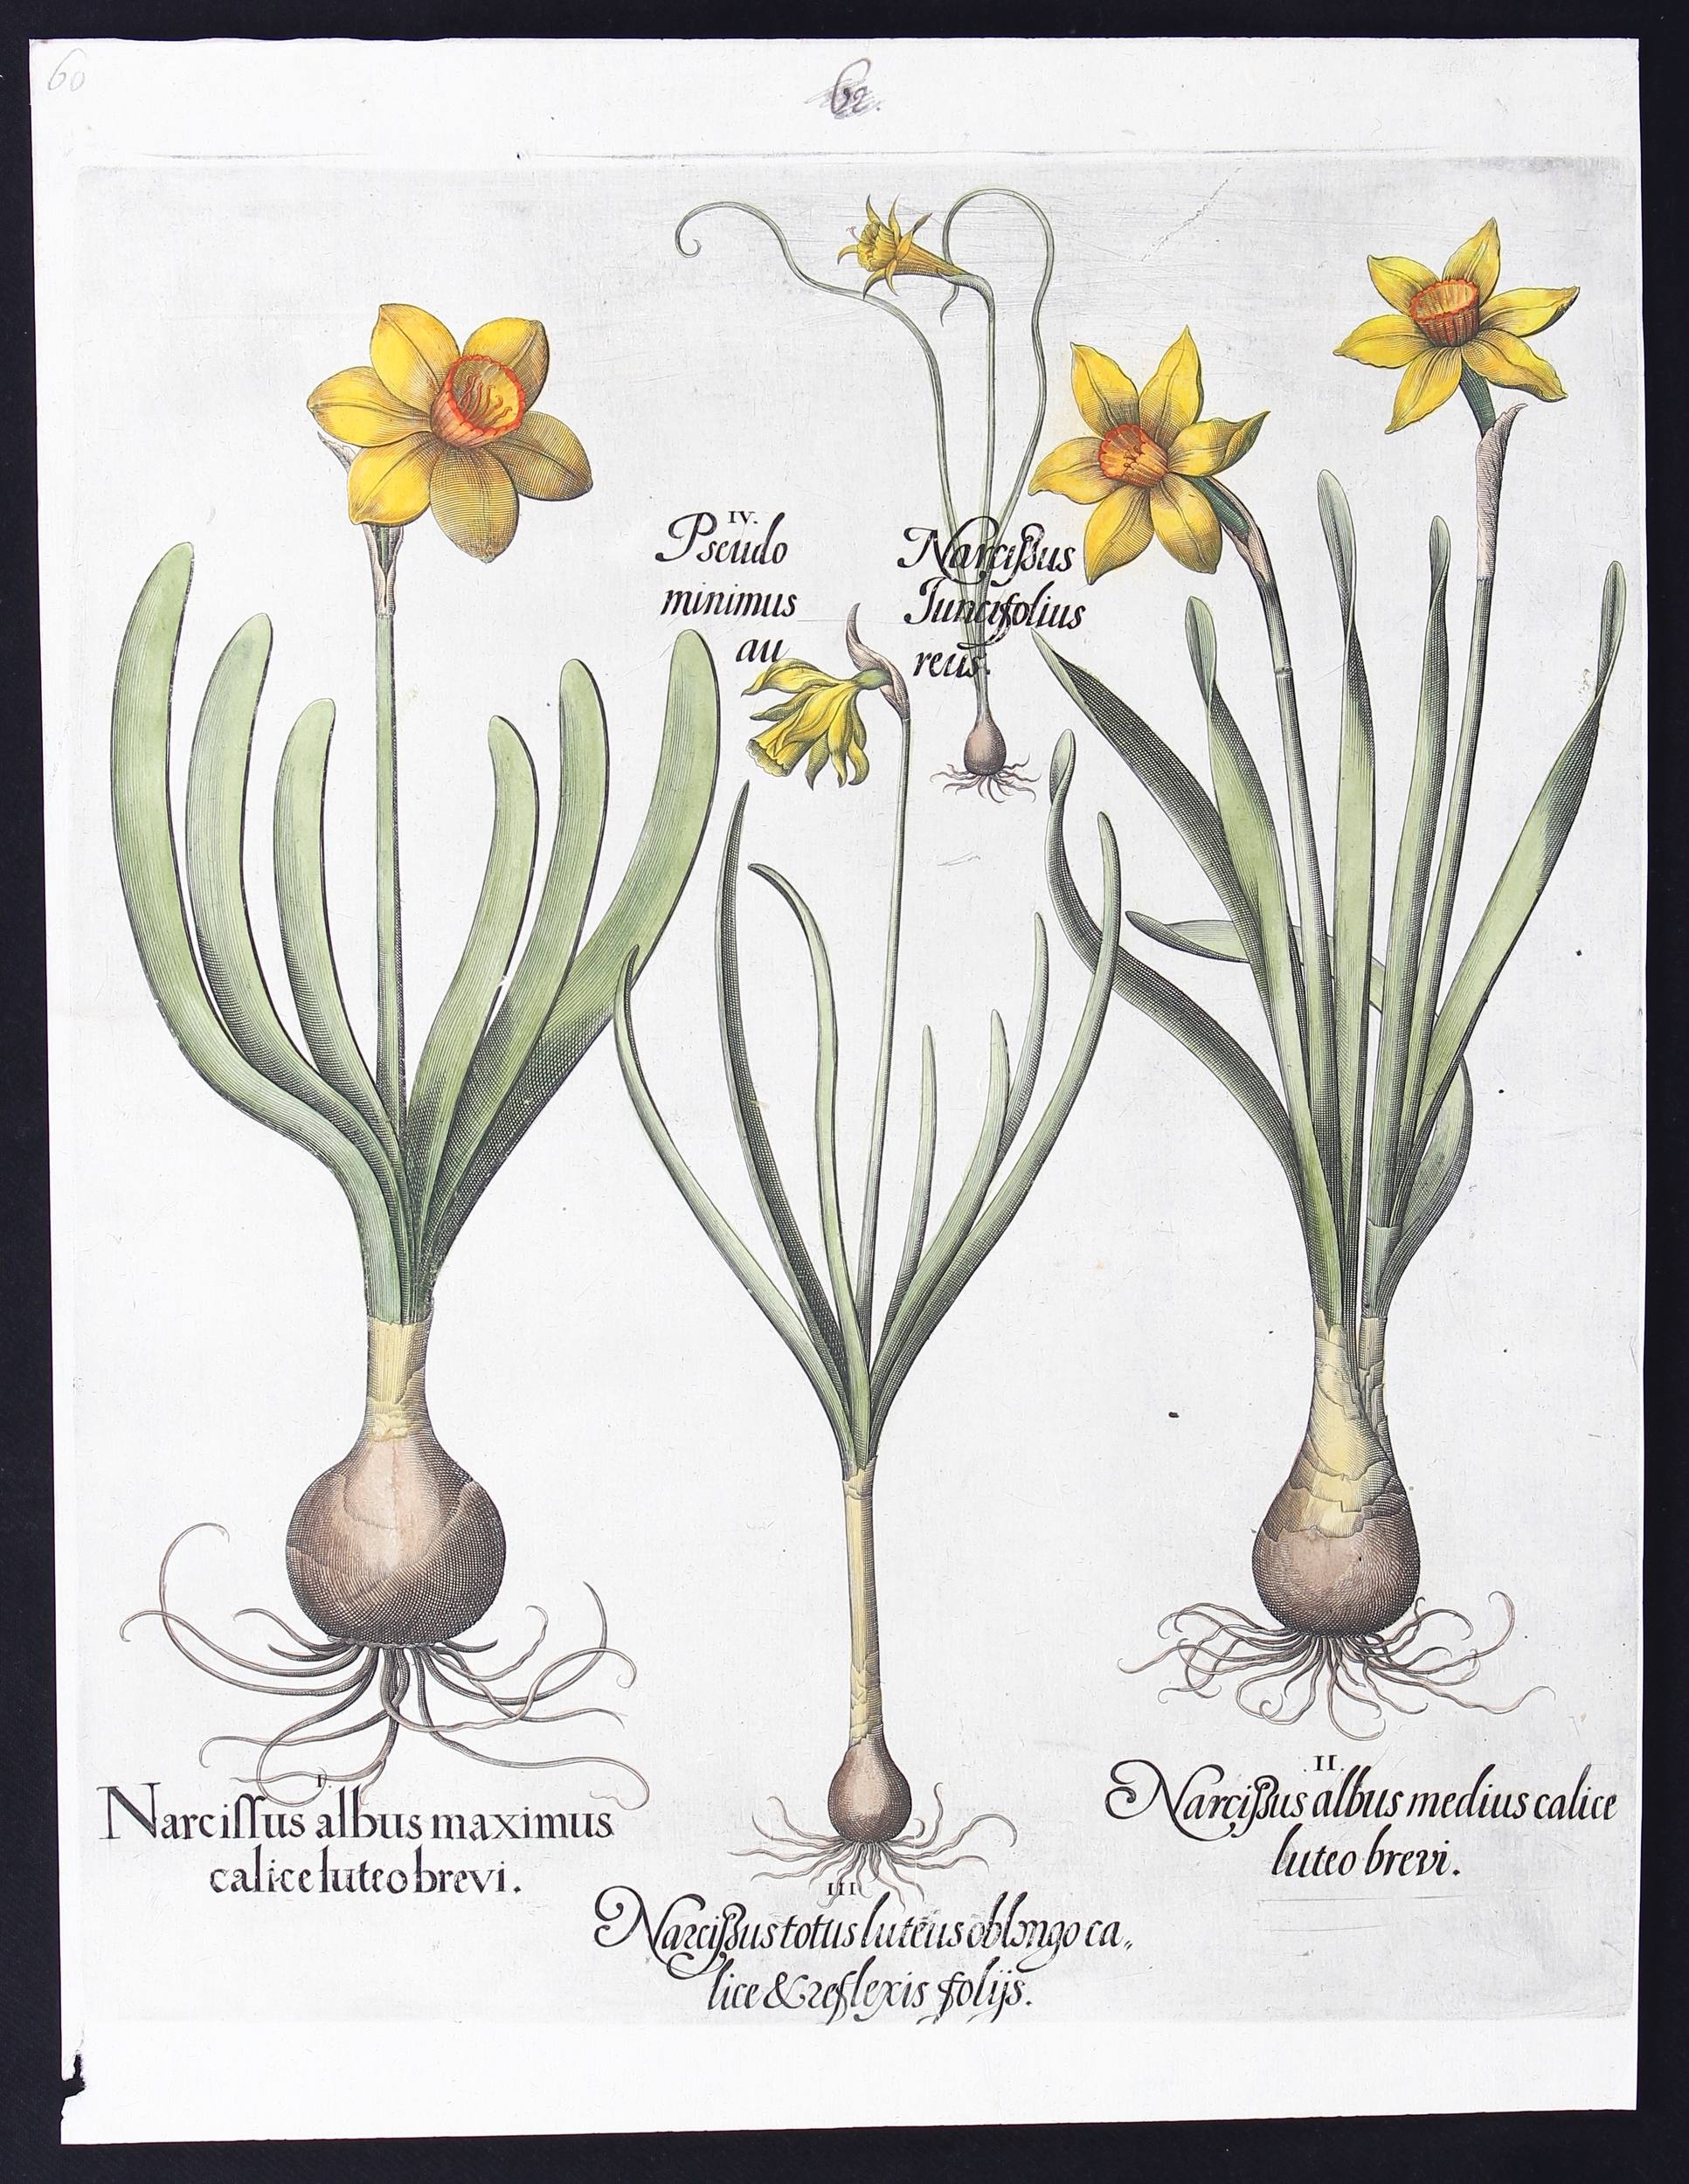 Narcissus albus maximus calice luteo brevi (&) medius (&) totus luteus oblongo calice & reflexis foliis (Narzissen)